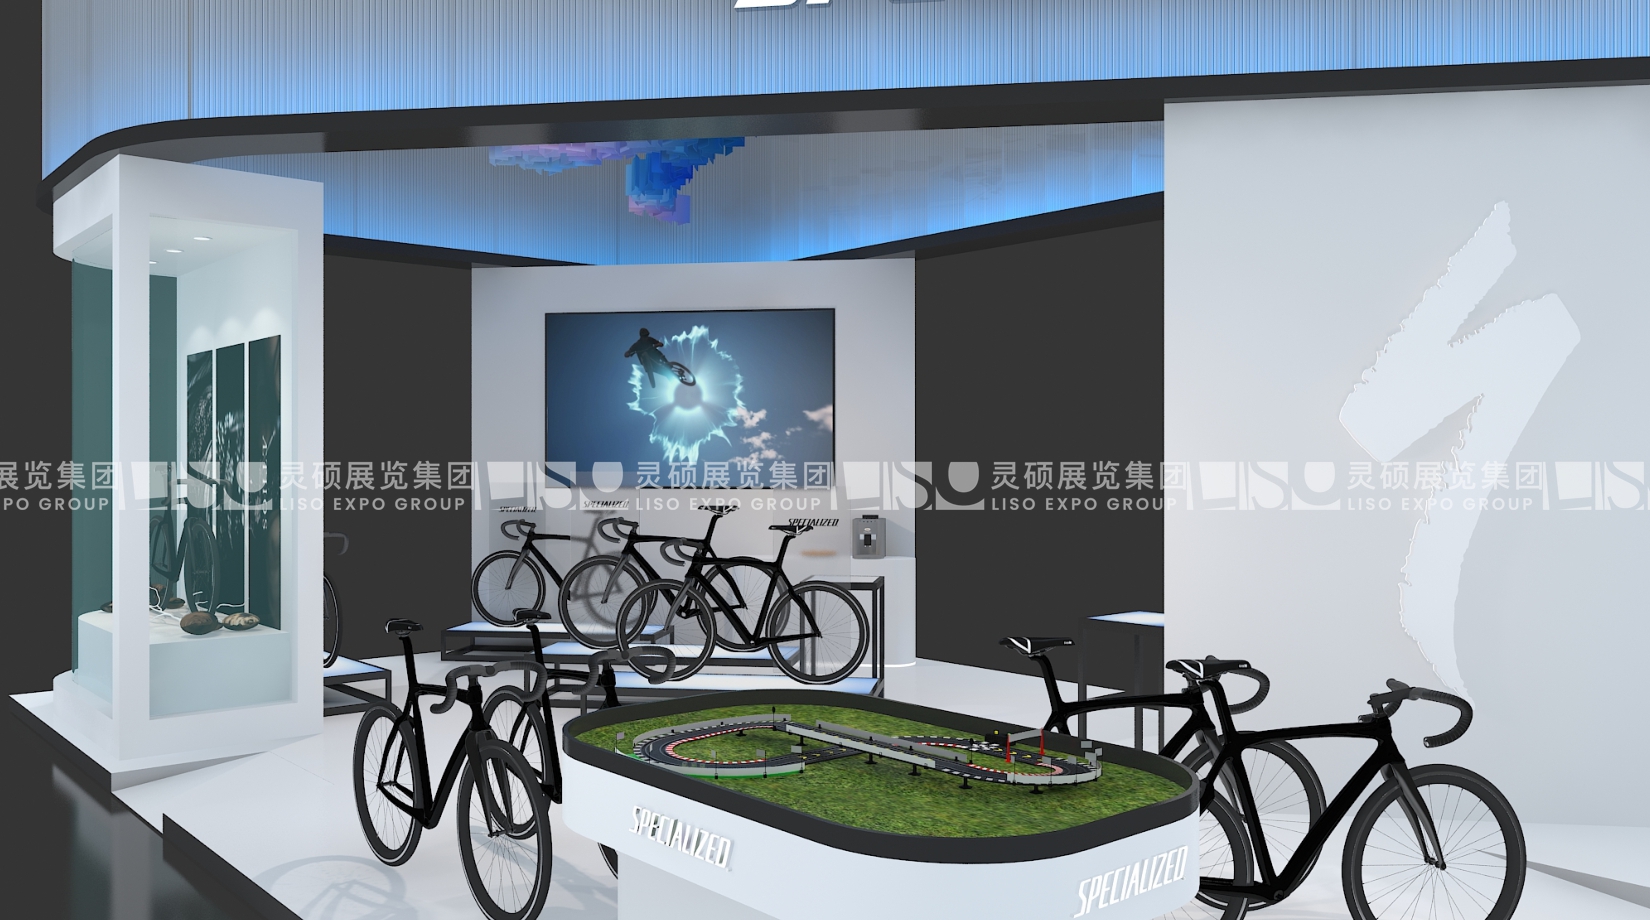 闪电自行车SPECIALIZED-第四届进博会展台设计搭建案例